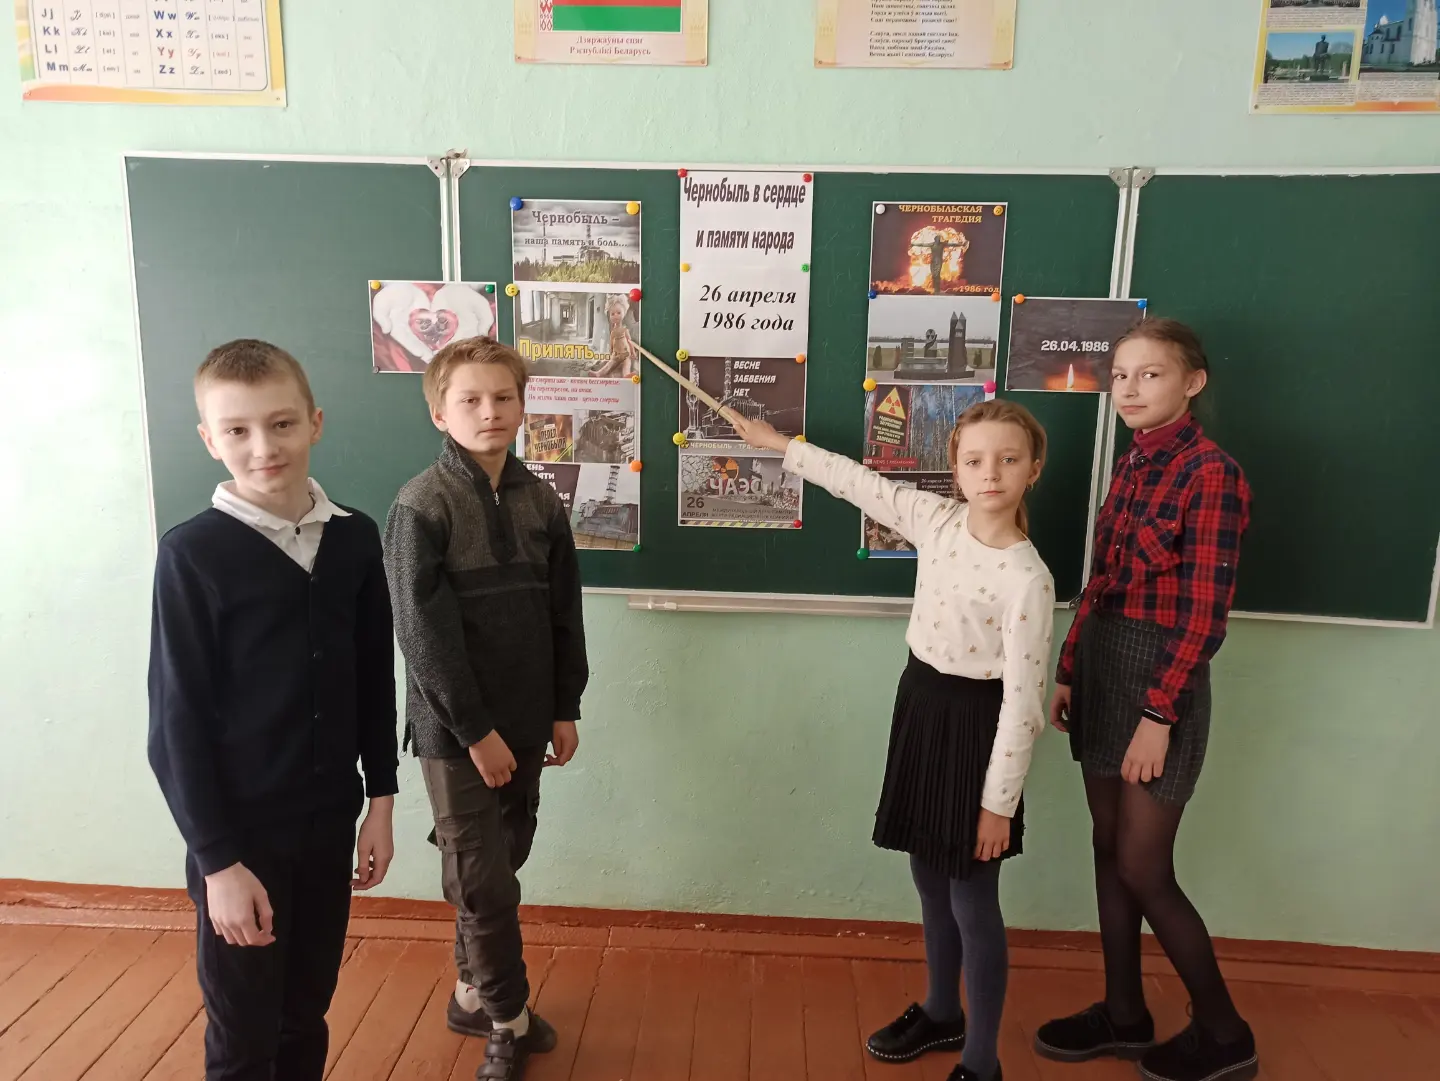 Информационный часы в школе. Классы в школе. Фото 5 классника. Фотосессия класса в школе. Классный час о Чернобыле для 5 класса.